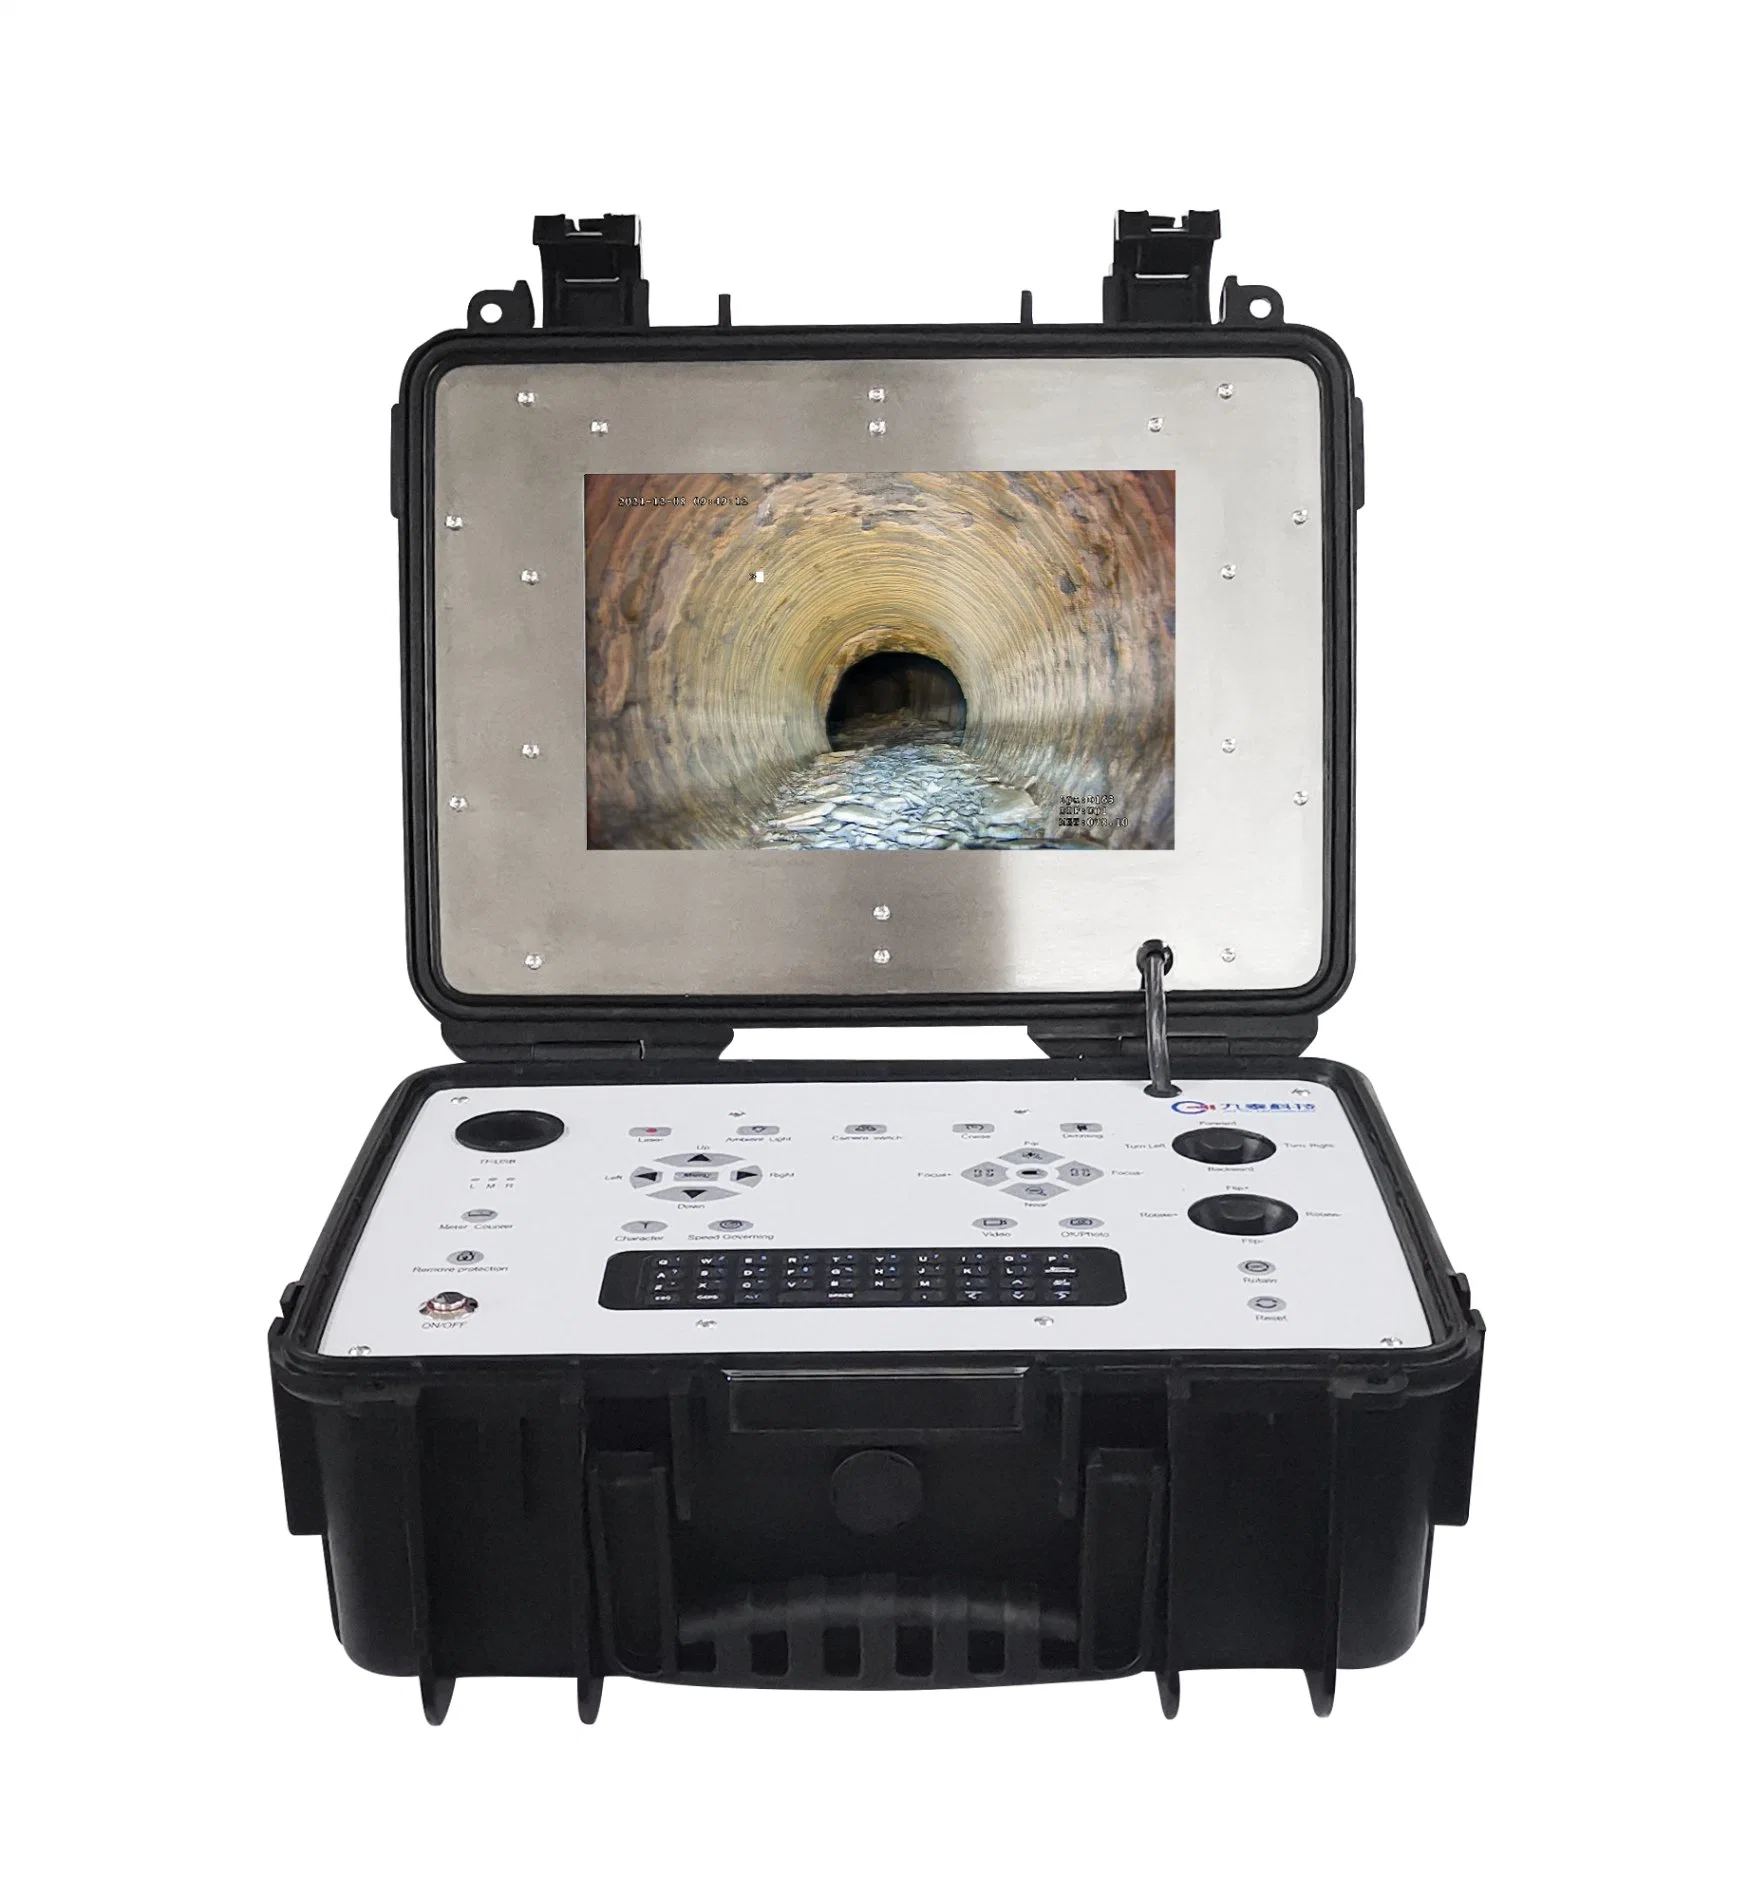 Kanalisationskamera für die Inspektion von Rohrleitungen mit 360 Grad drehter Hubkamera